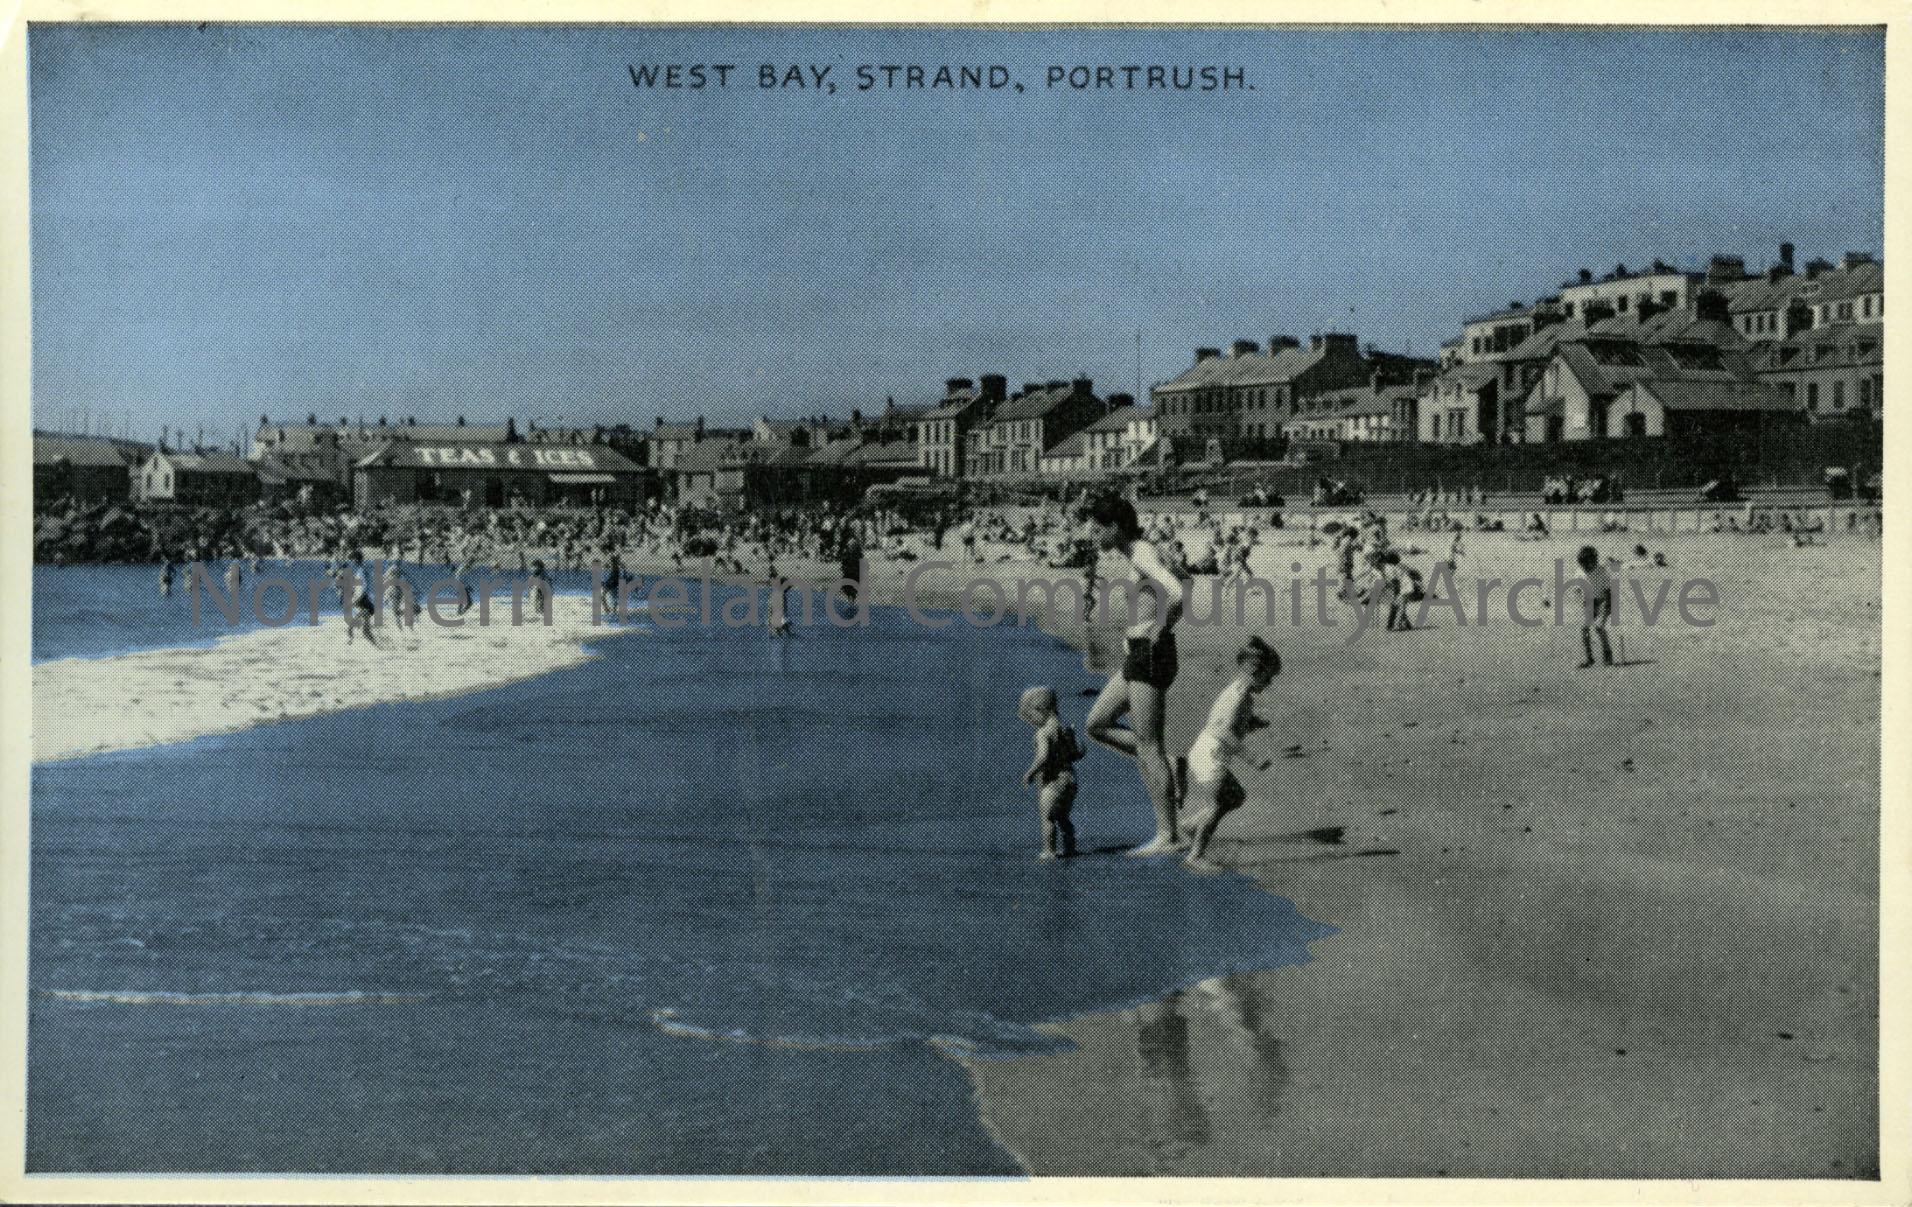 West Bay, Strand, Portrush